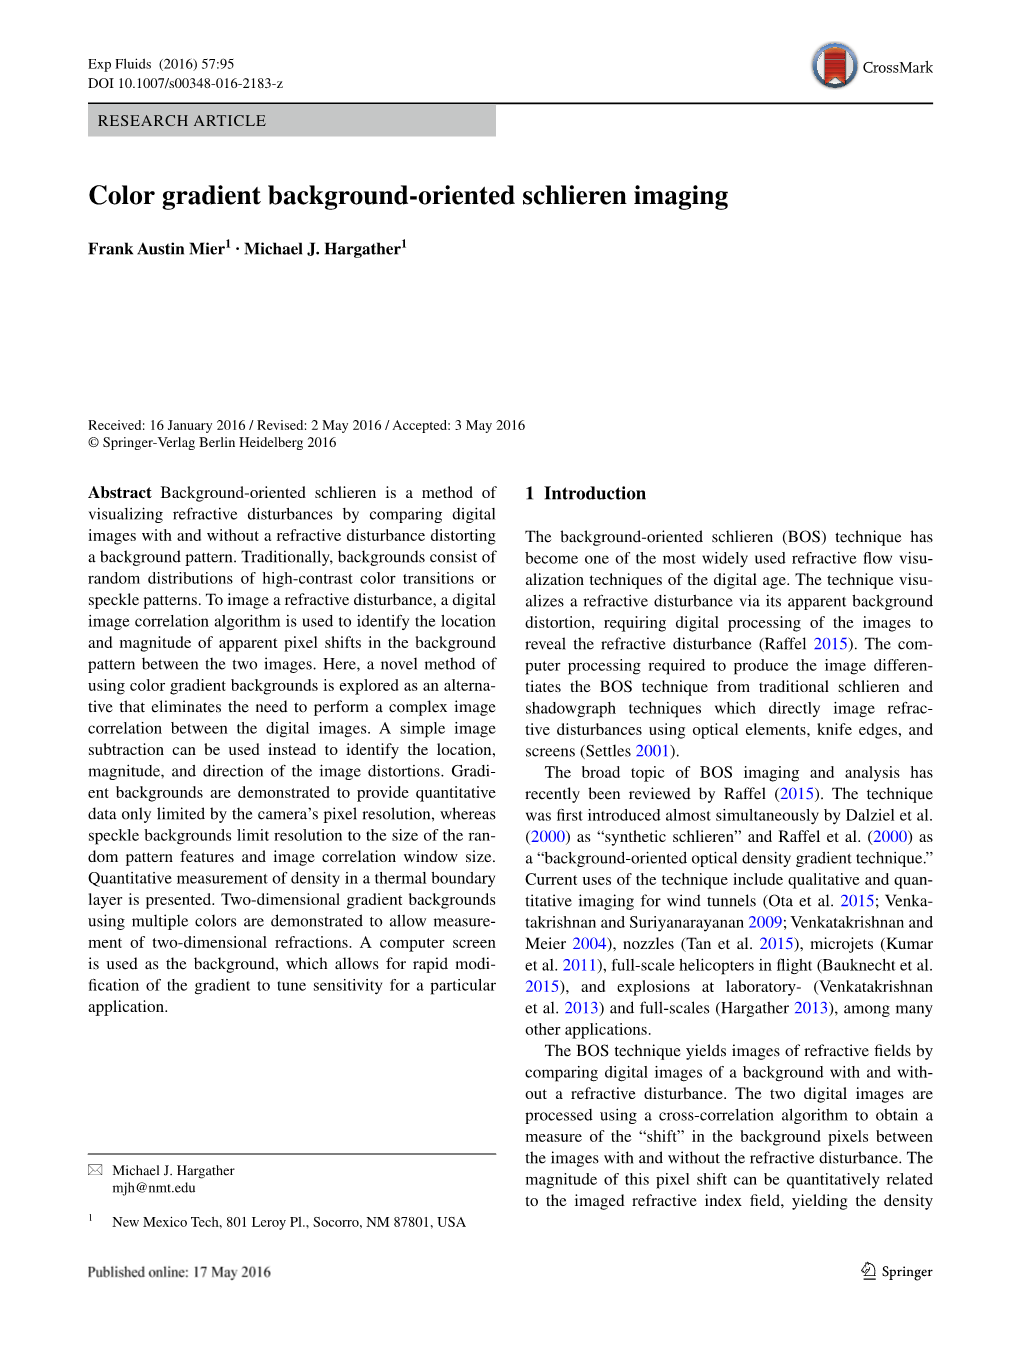 Color Gradient Background-Oriented Schlieren Imaging